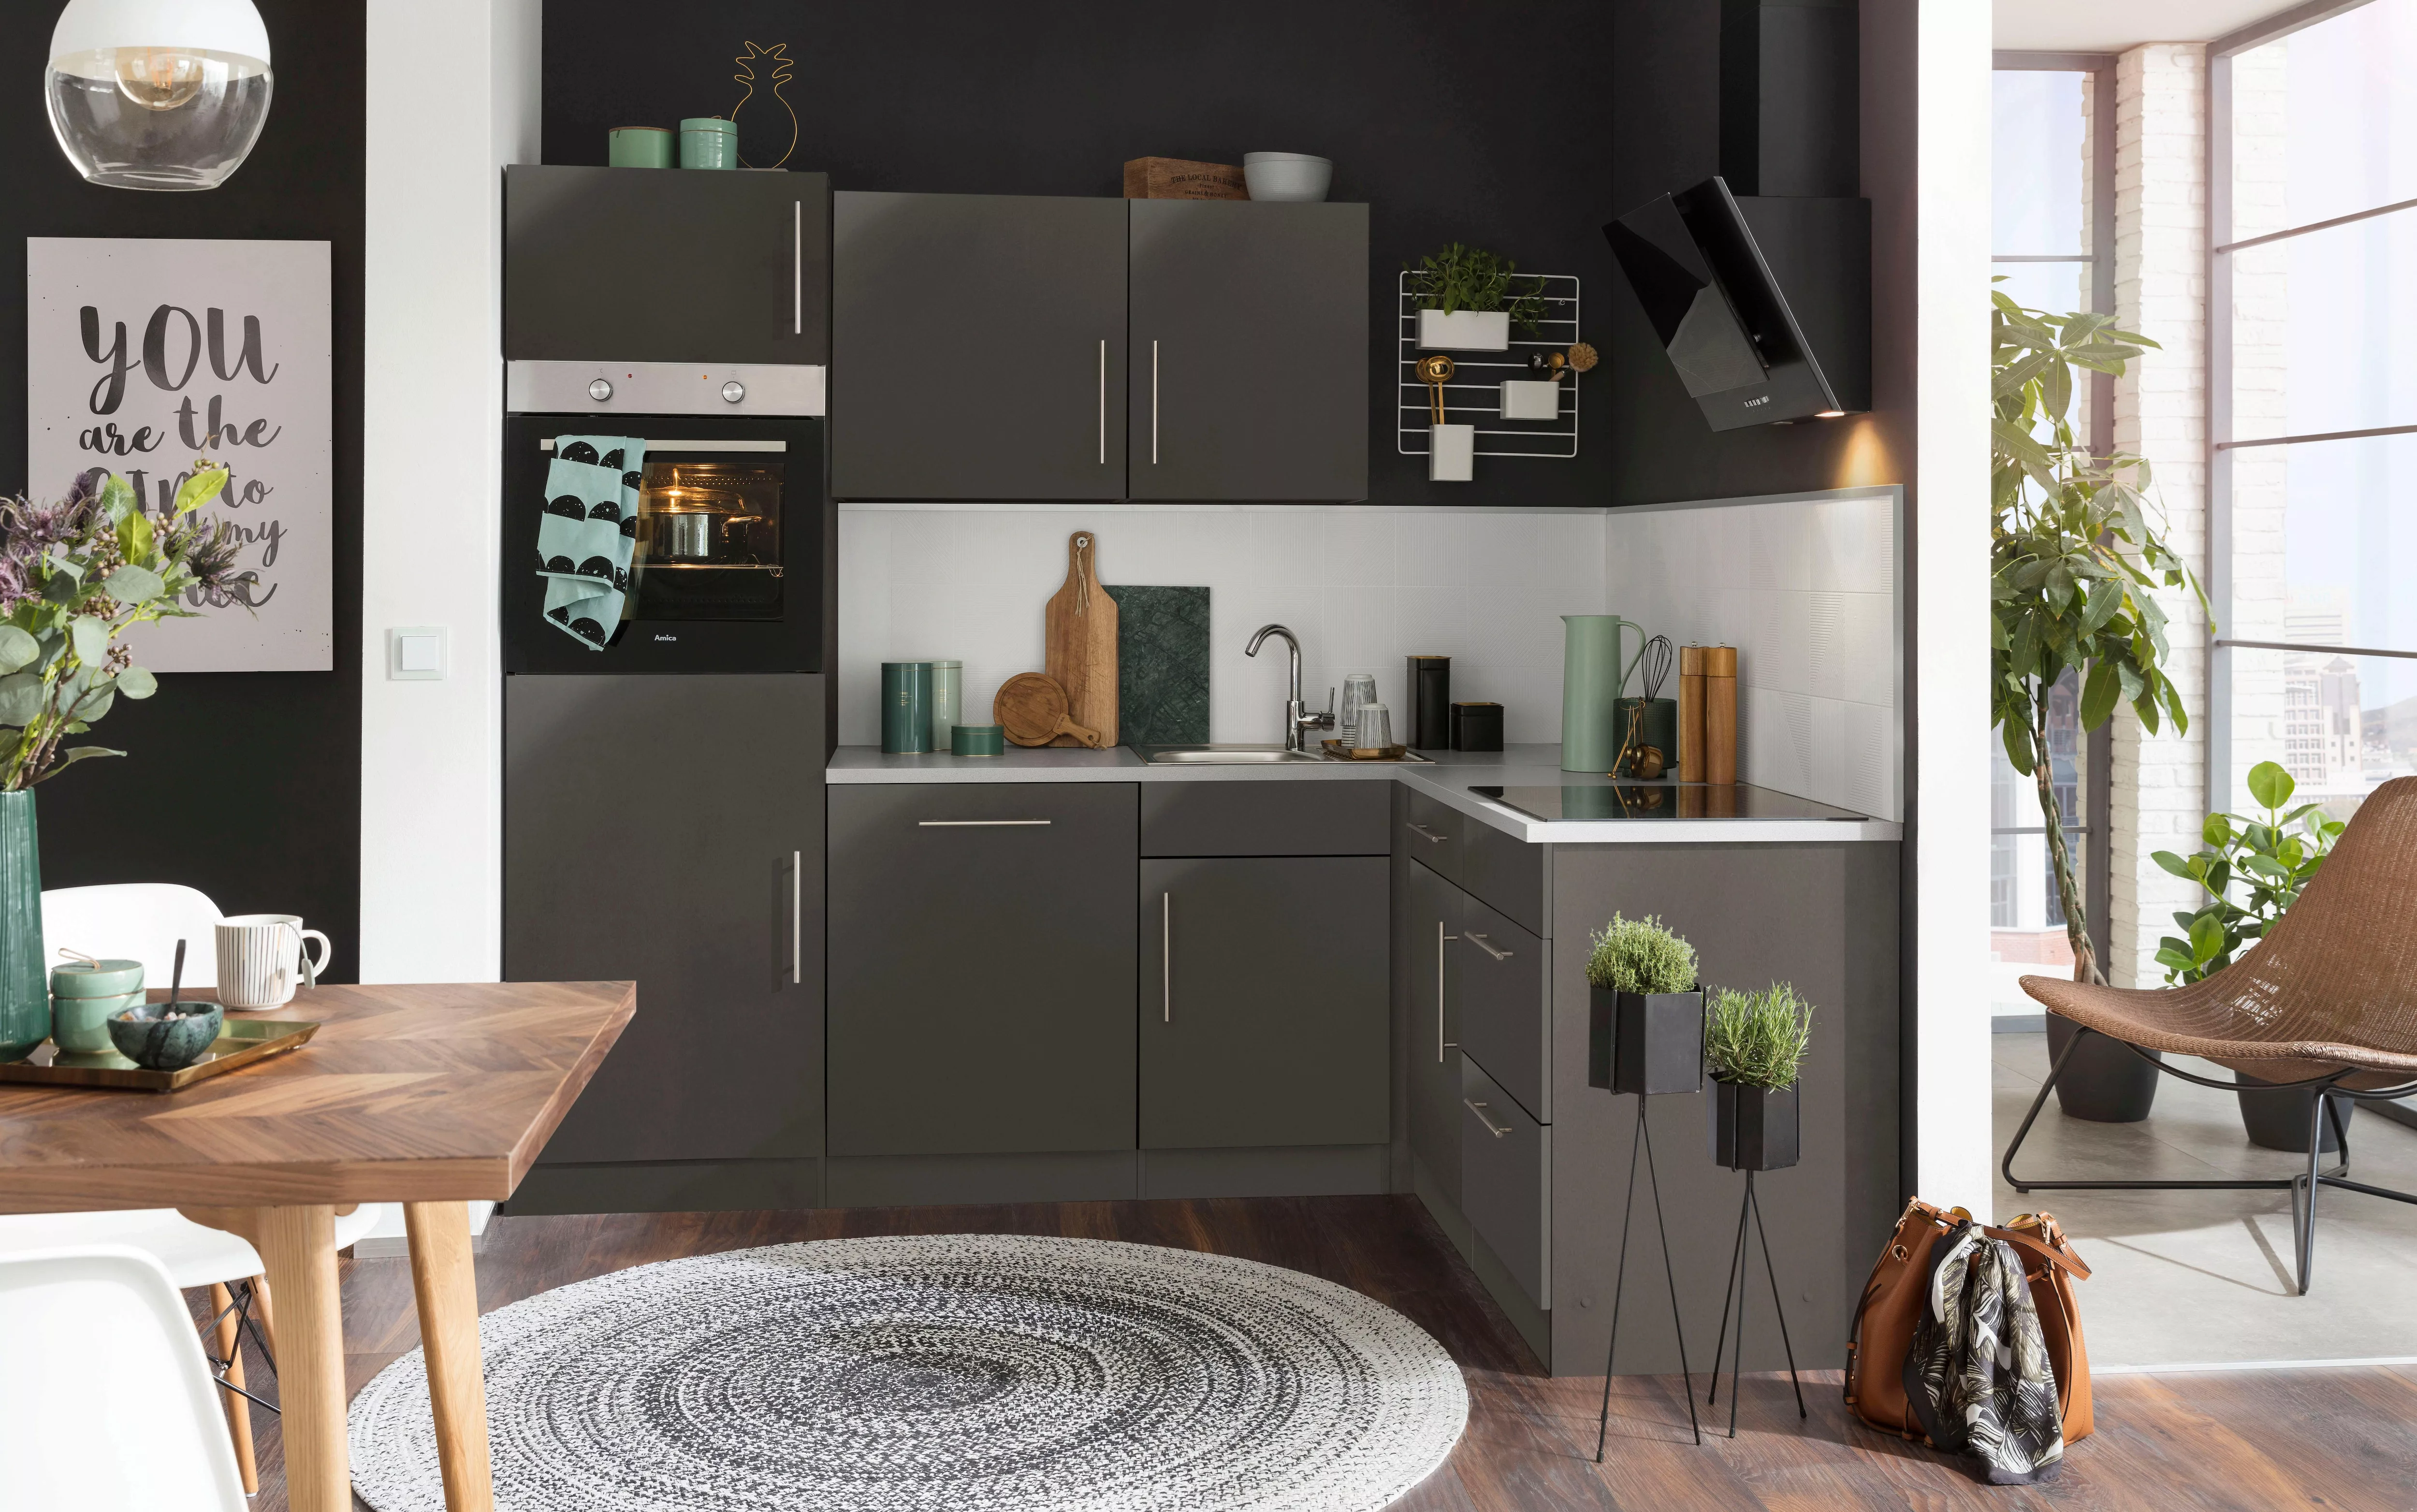 wiho Küchen Winkelküche "Cali", ohne E-Geräte, Stellbreite 230 x 170 cm günstig online kaufen